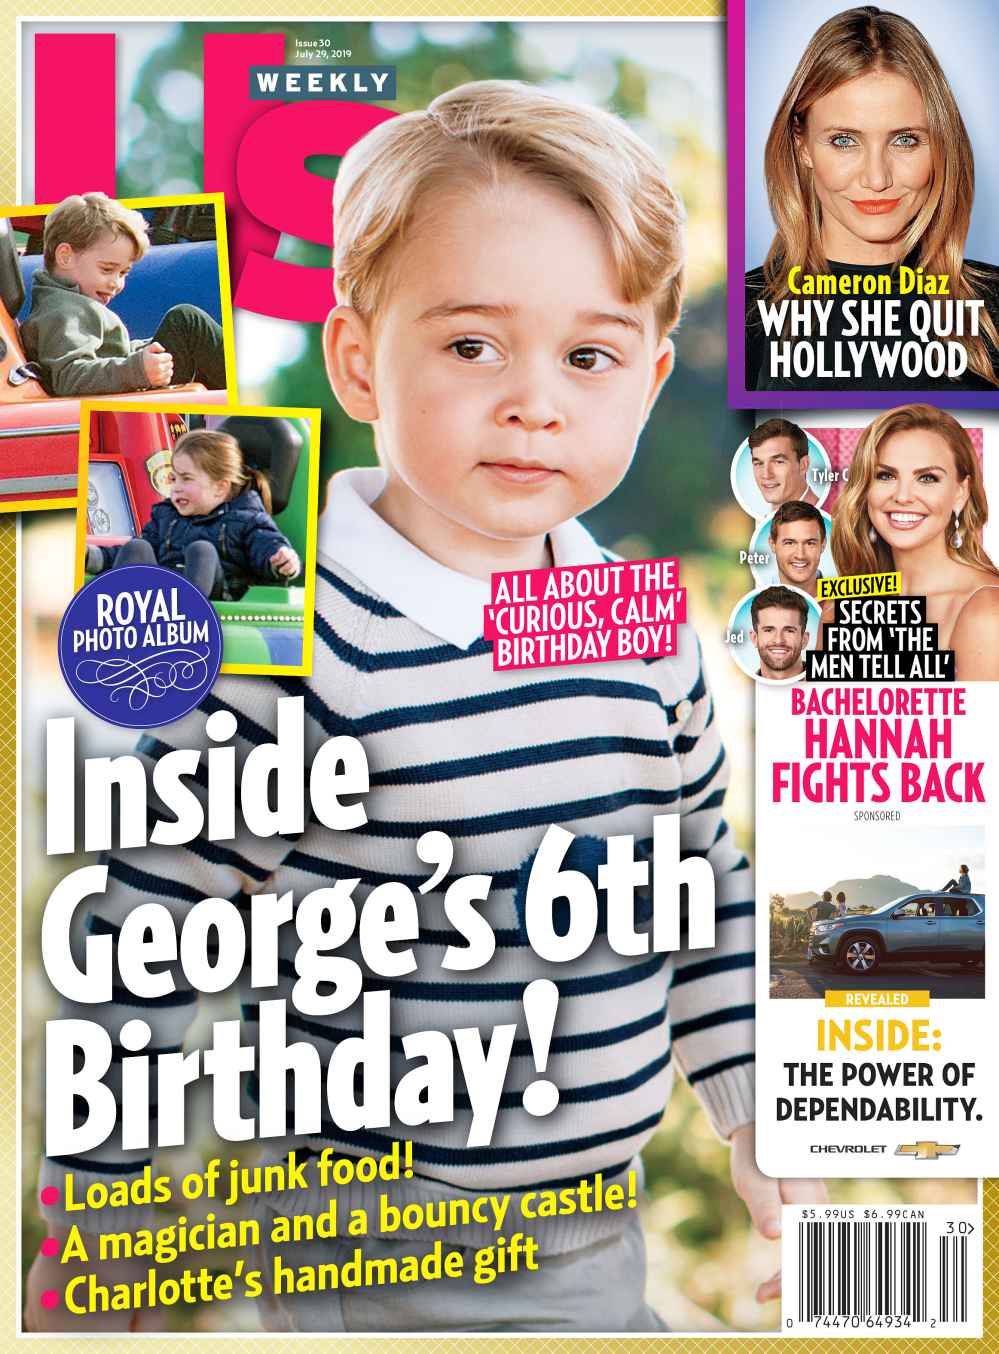 Us Weekly 3019 Prince George Birthday